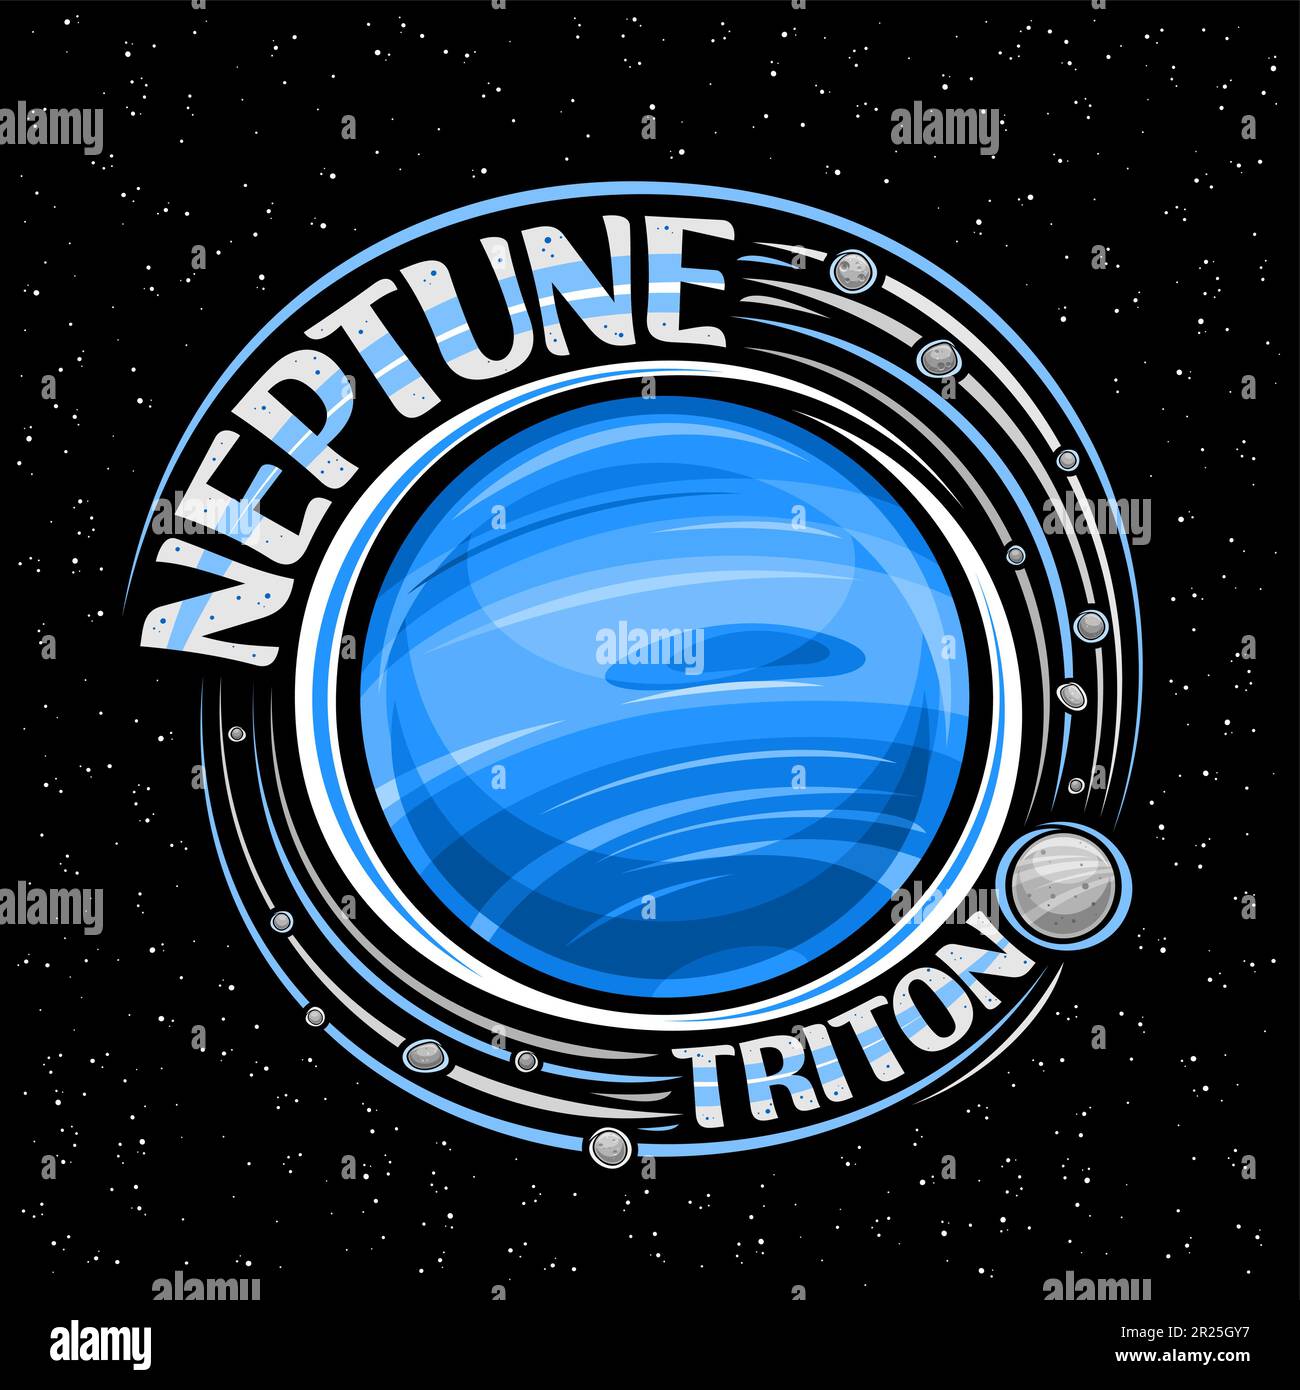 Logo vettoriale per Nettuno, stampa fantasia decorativa con pianeta rotante nettuno e molte lune, superficie ventosa a gas Illustrazione Vettoriale